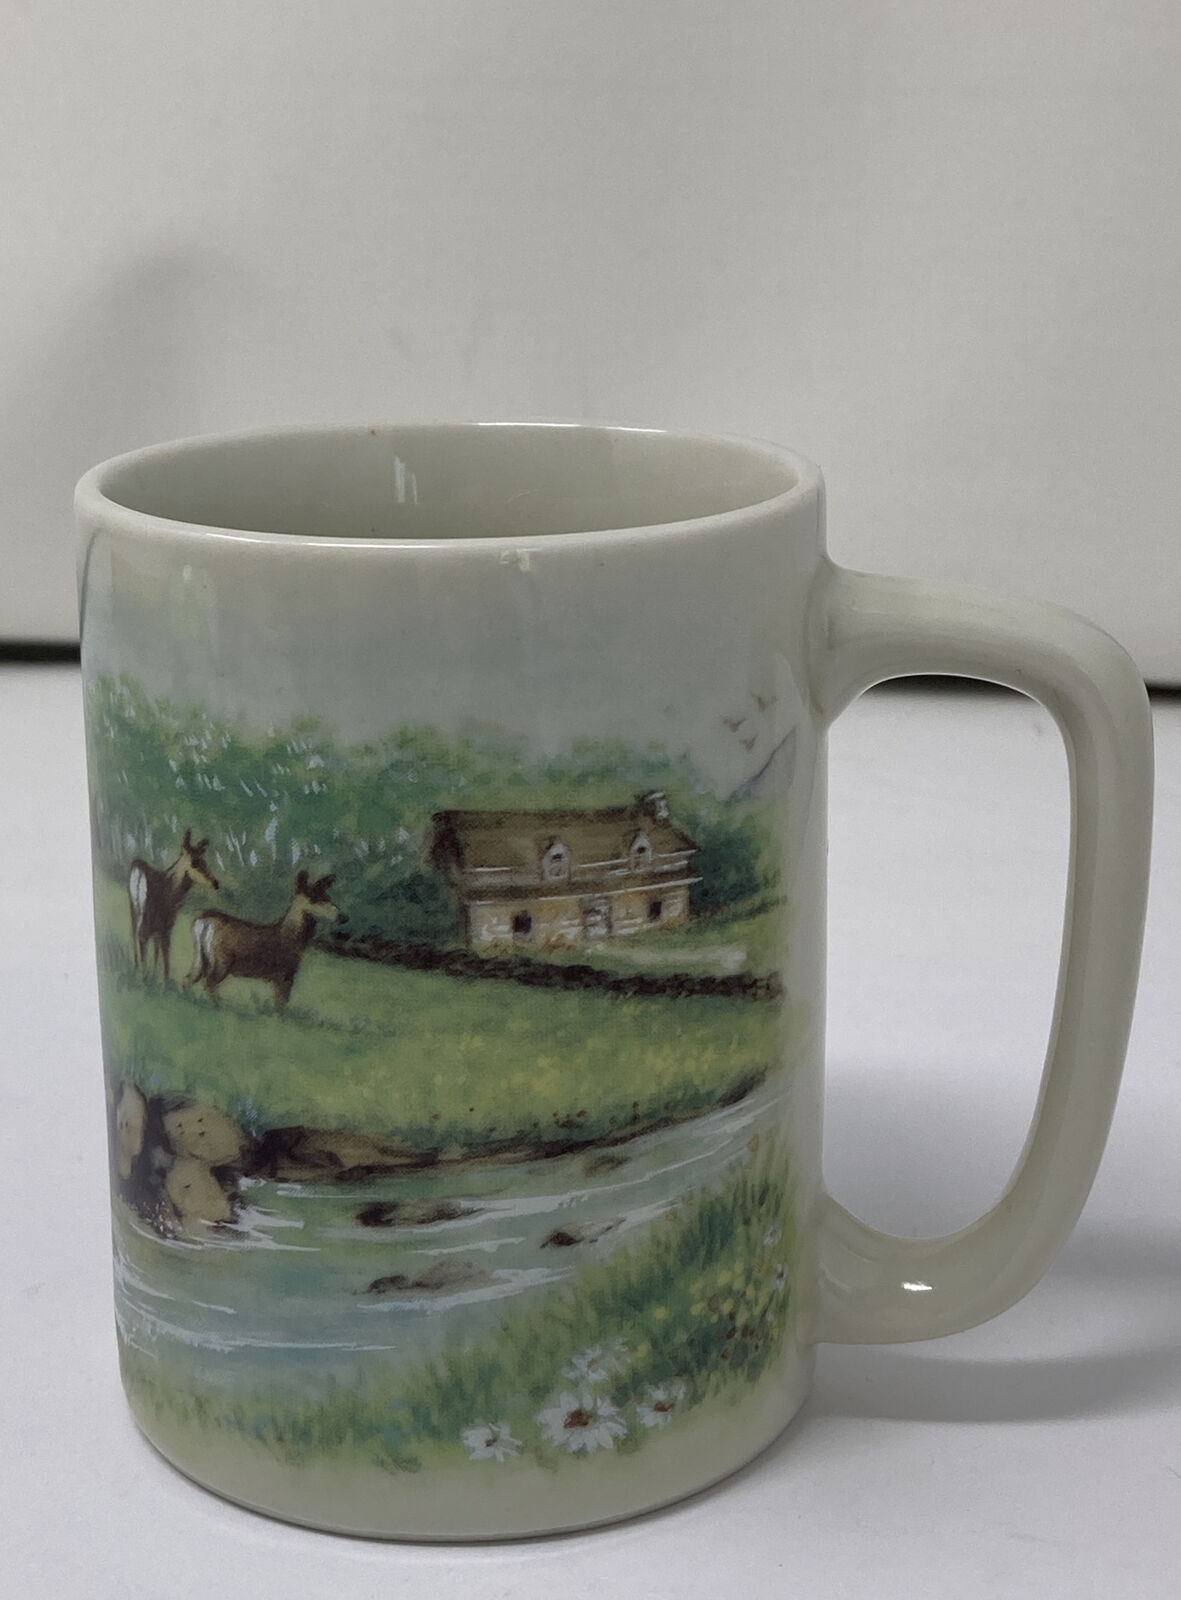 Otigari Mug Deer in Meadow by River & Farm Ceramic Mug Cup Vintage Gibson